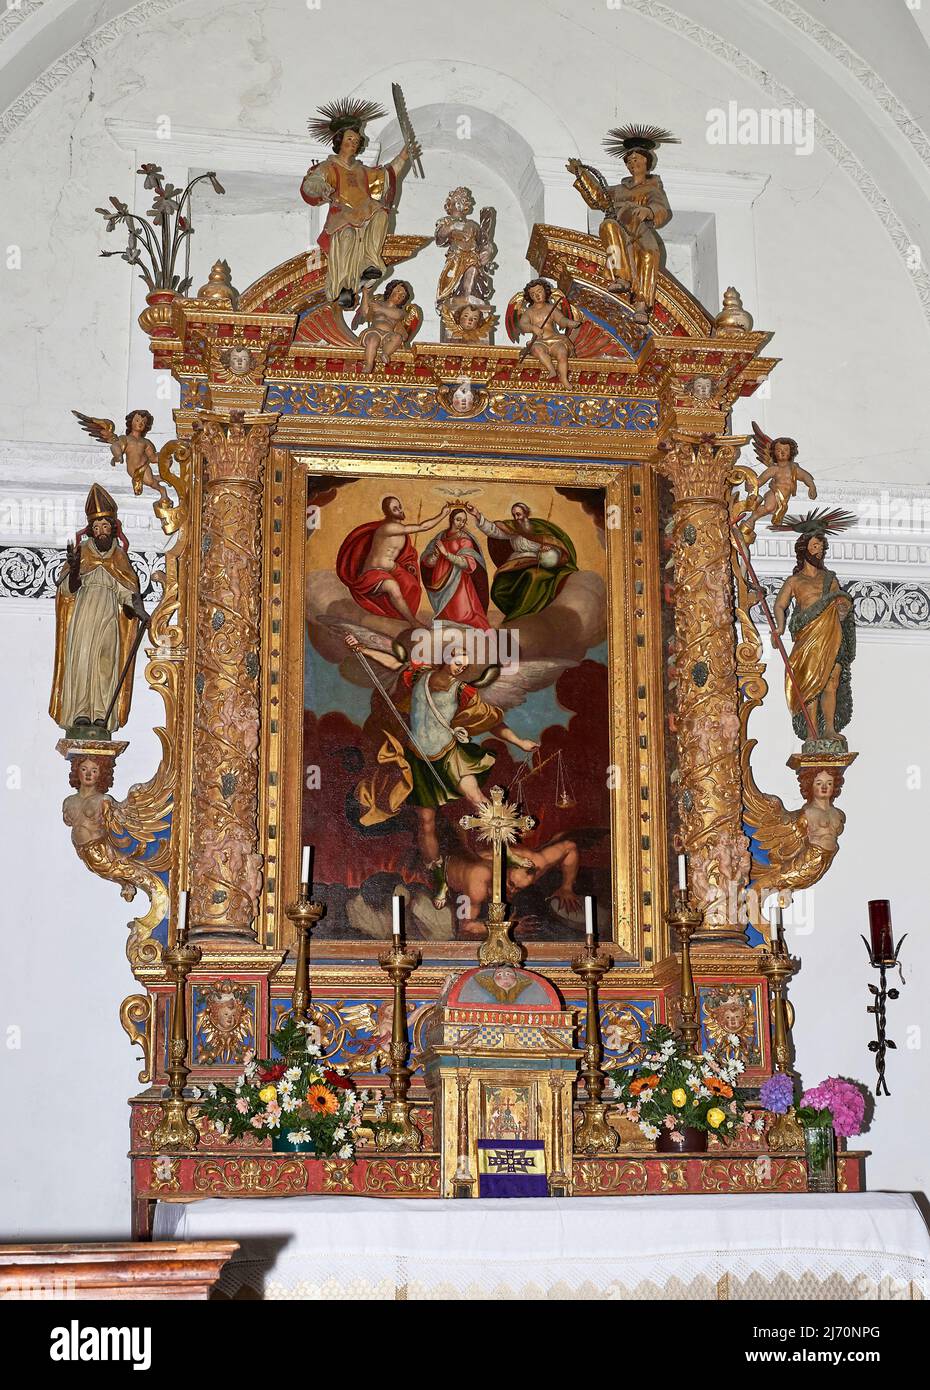 Ancona lignea del XVII secolo di Antonio Ramus e Nicolò Bracchi con olio su tela raffigurante la Madonna incoronata e S.Michele Arcangelo che scon Banque D'Images